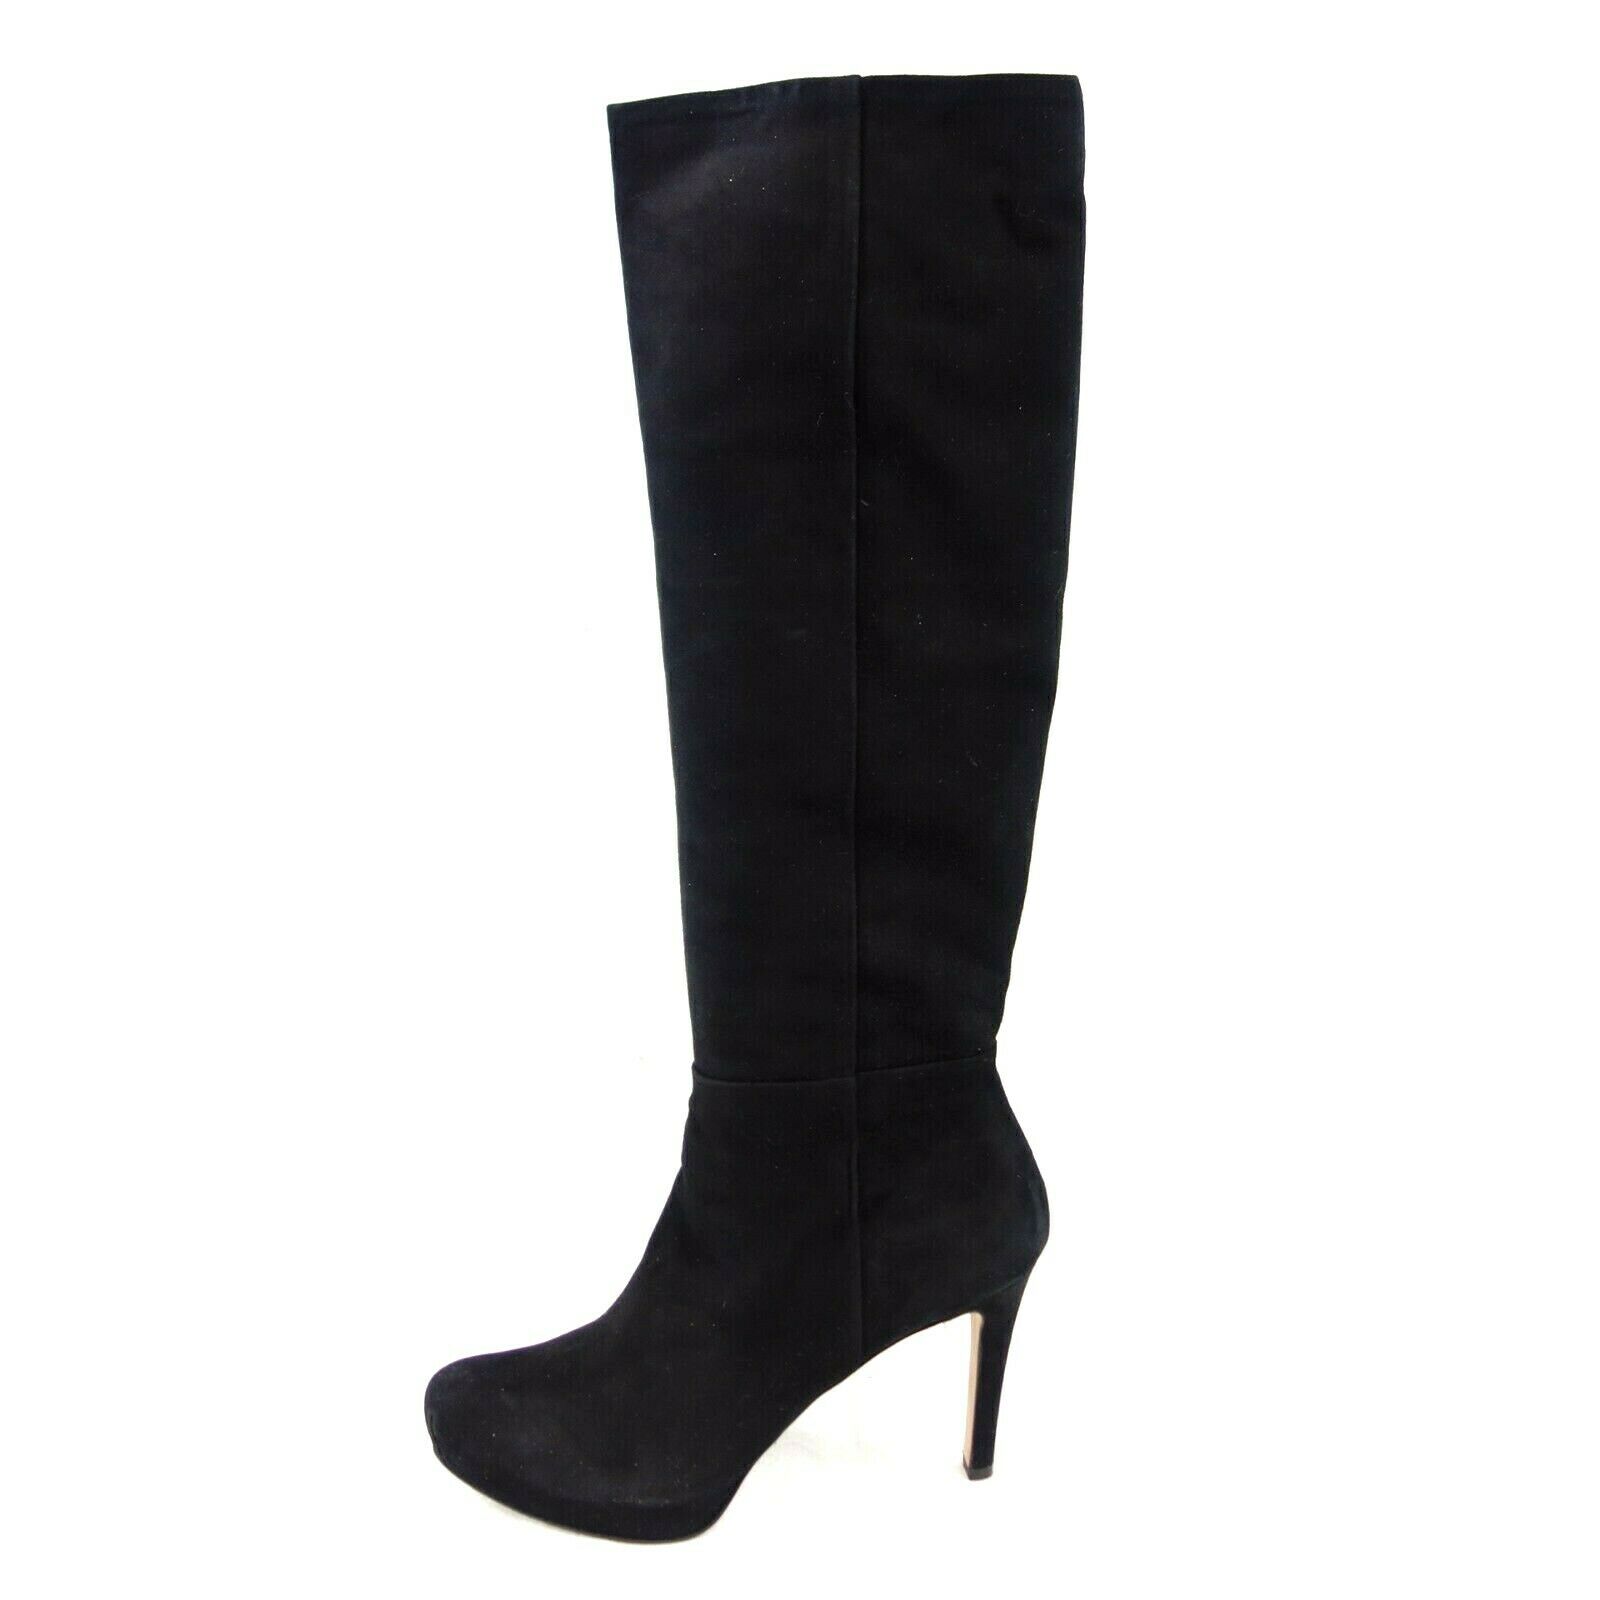 Pura Lopez Ladies Shoes Platform Ankle Boots Black Suede Size 41 Np 379 New